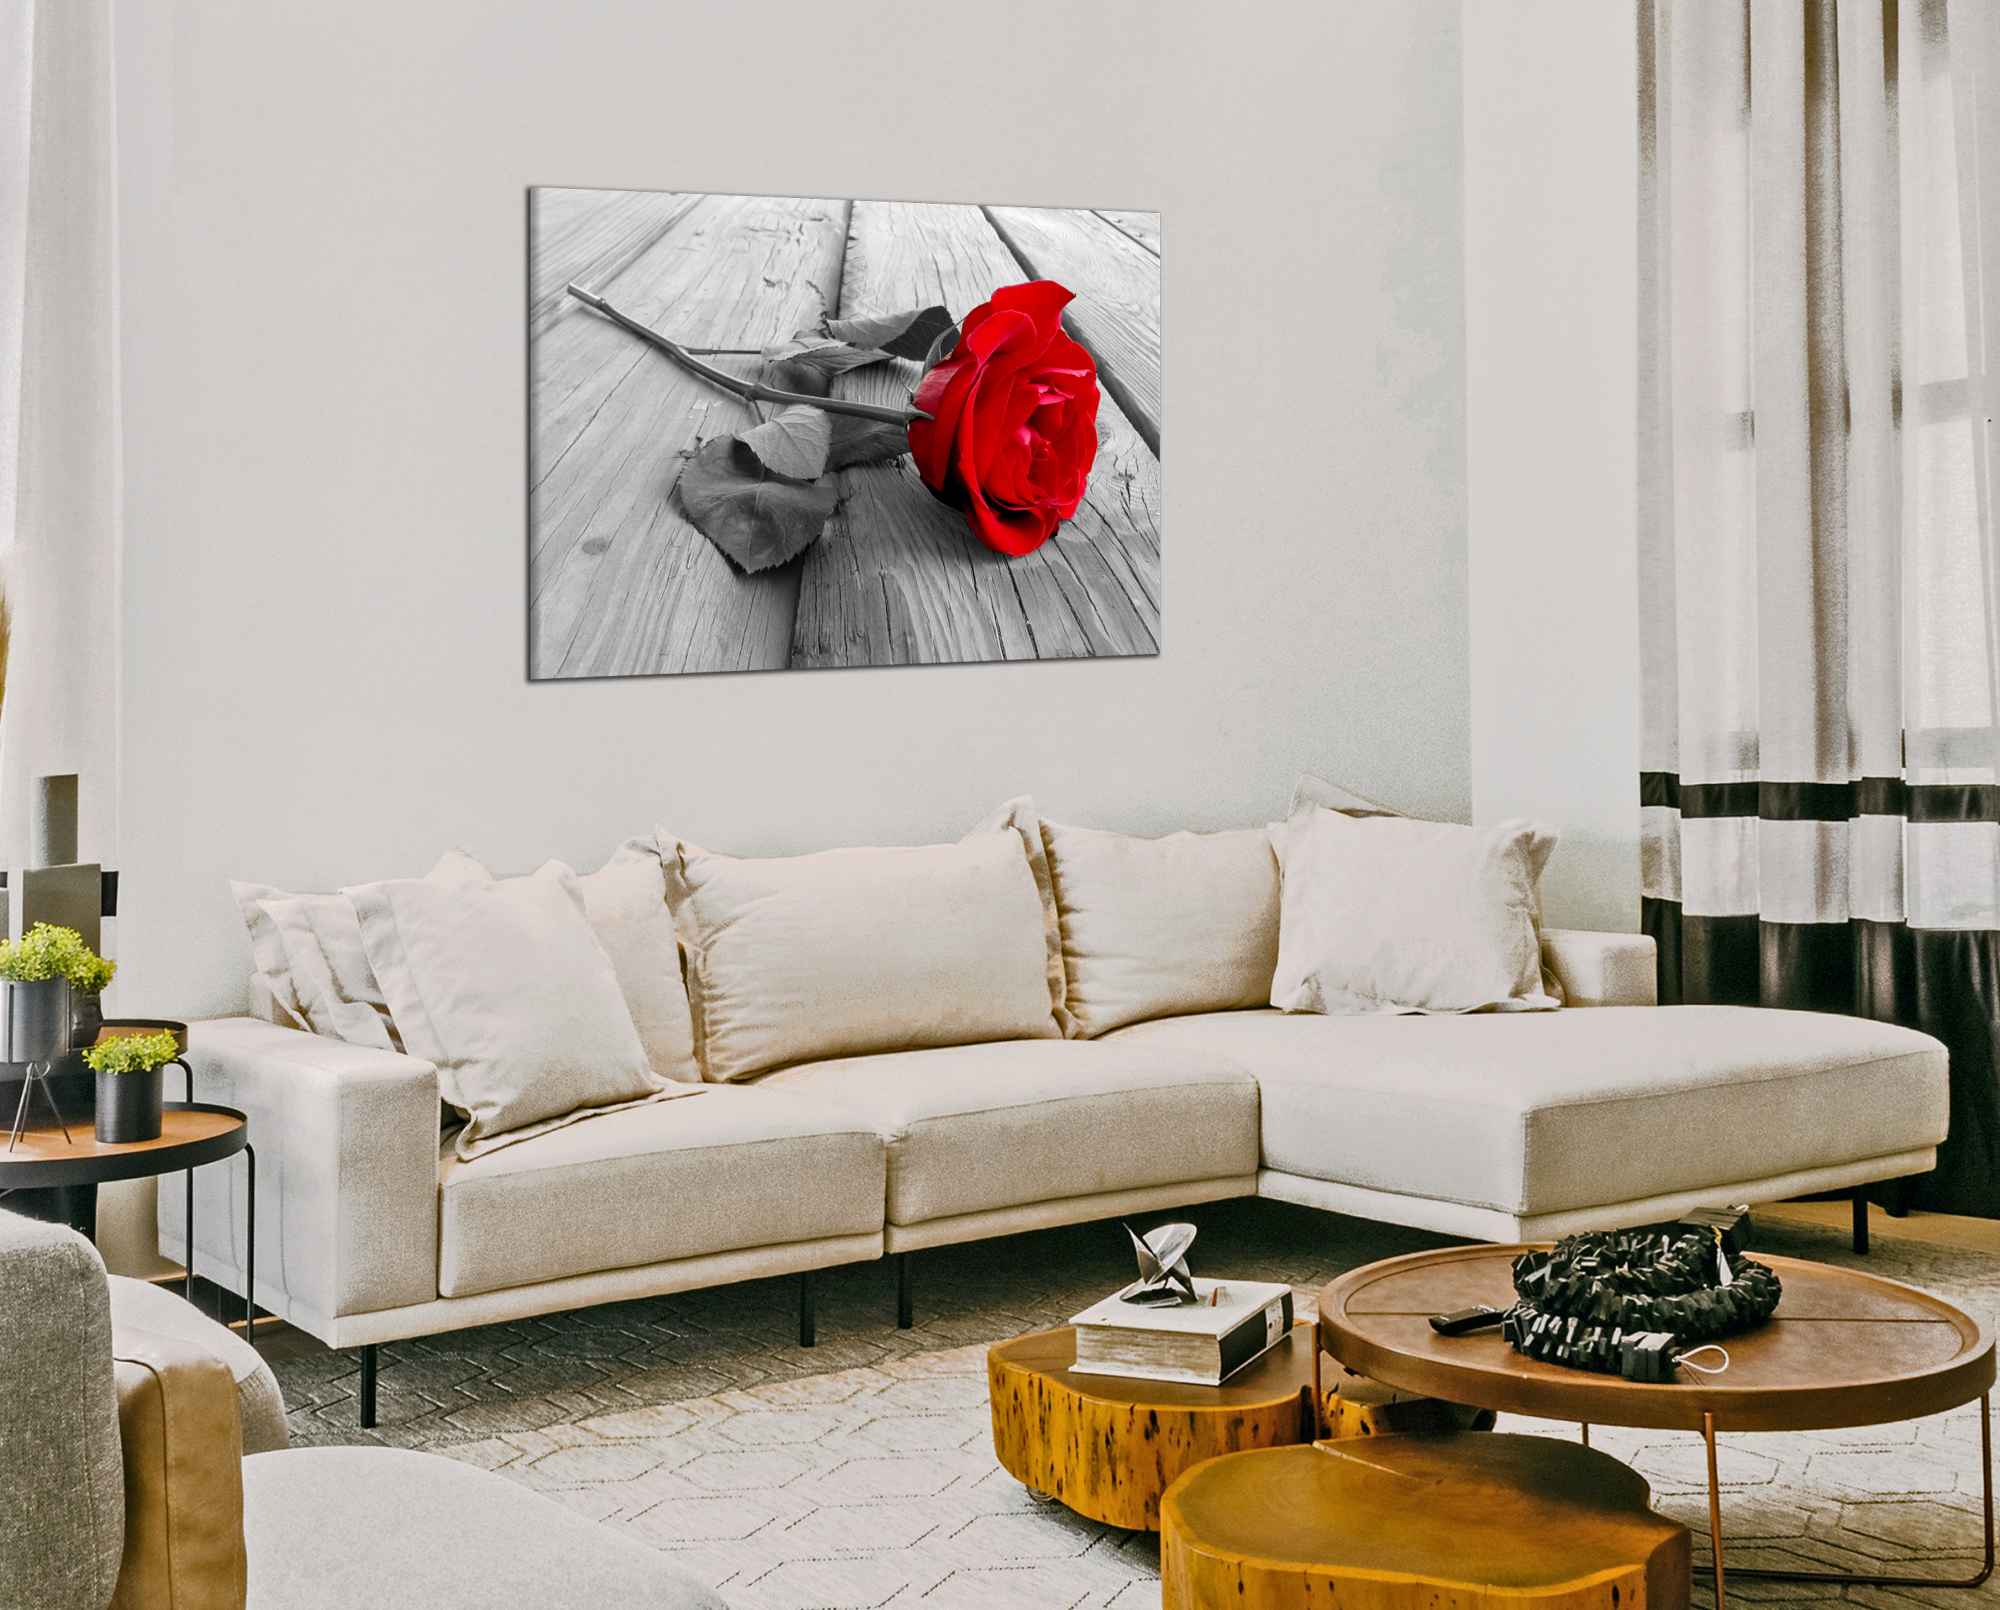 Obdelníkový obraz Červená růže